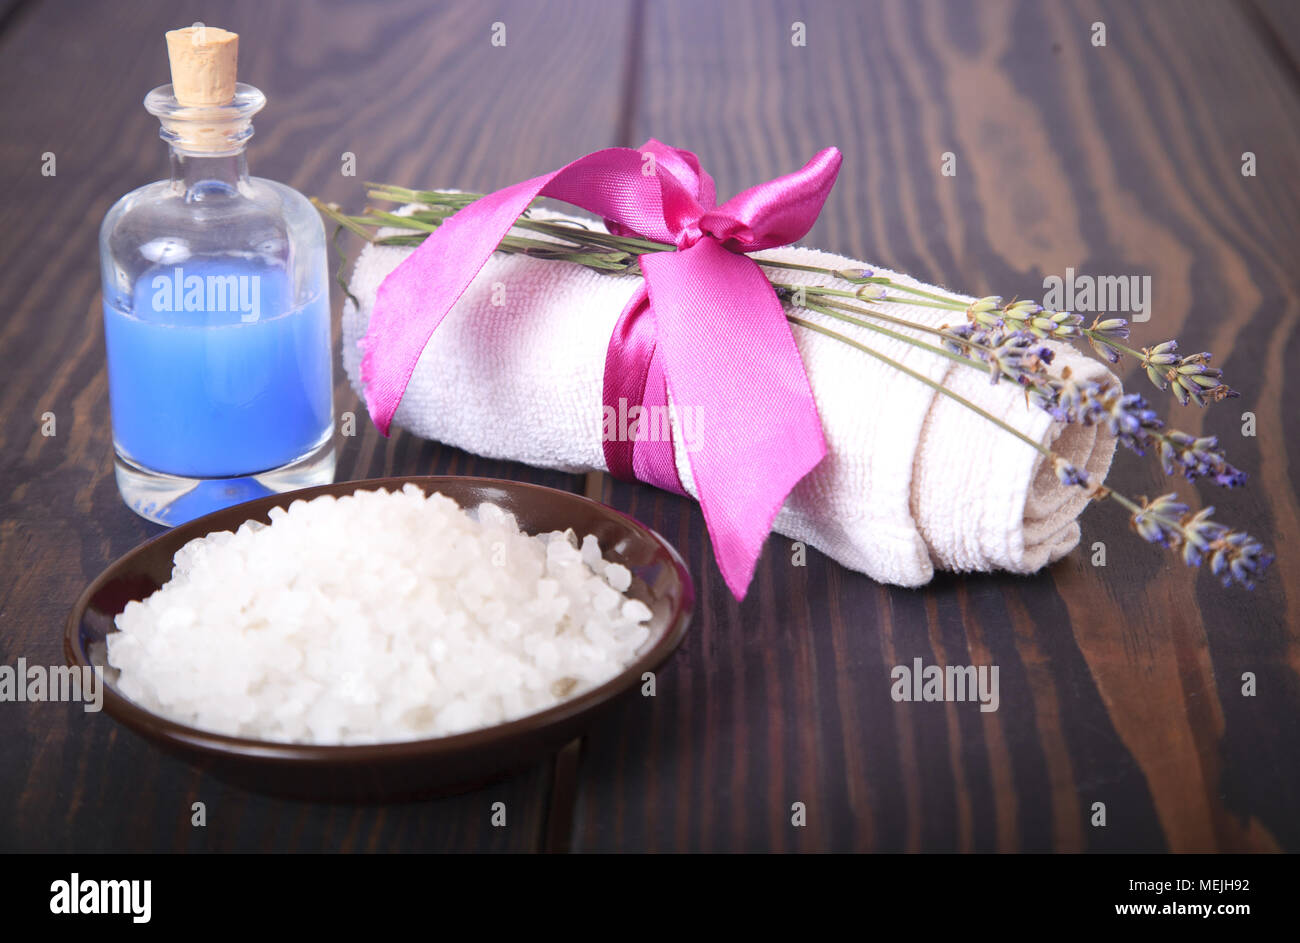 Lavendel, Salz auf ein Brett, Hygieneartikel für Bad und Wellness. Stockfoto